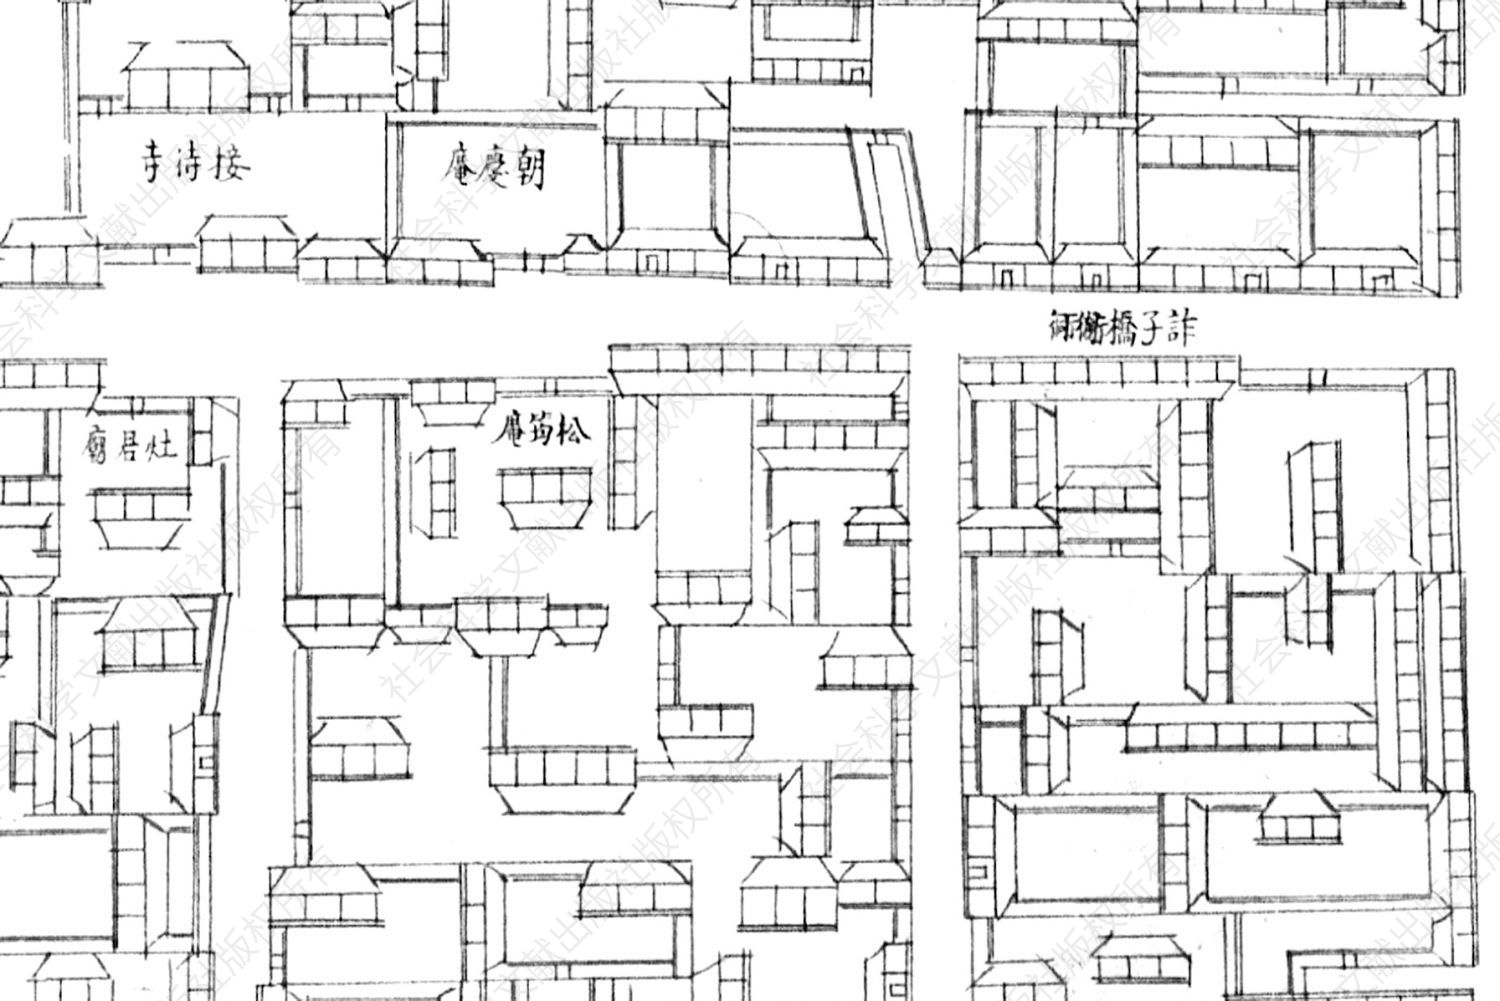 图1 《乾隆京城全图》中松筠庵的院落布局